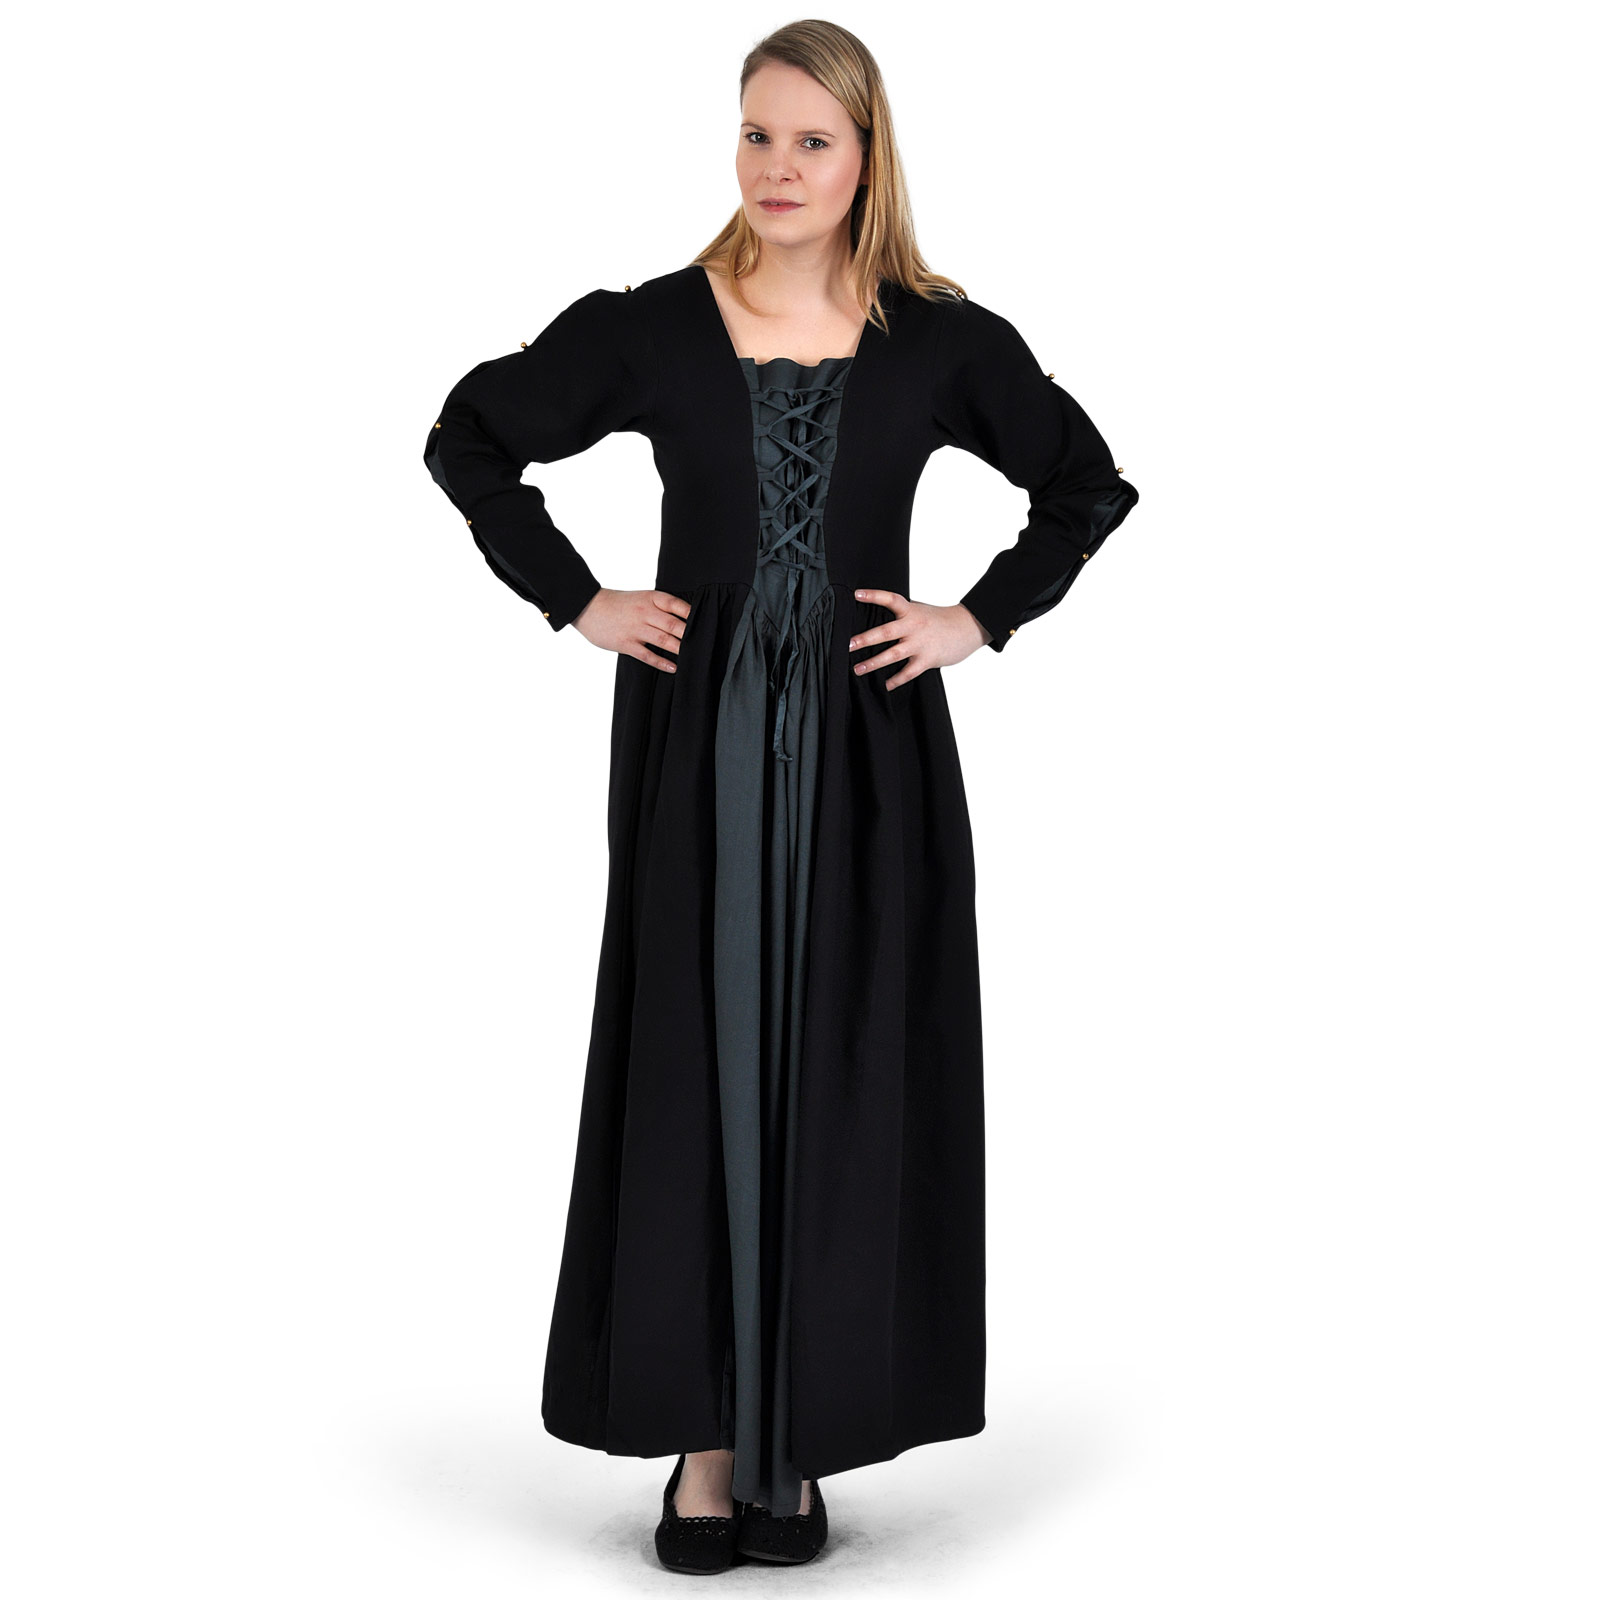 Mittelalter Kleid Orianne schwarz-blaugrau